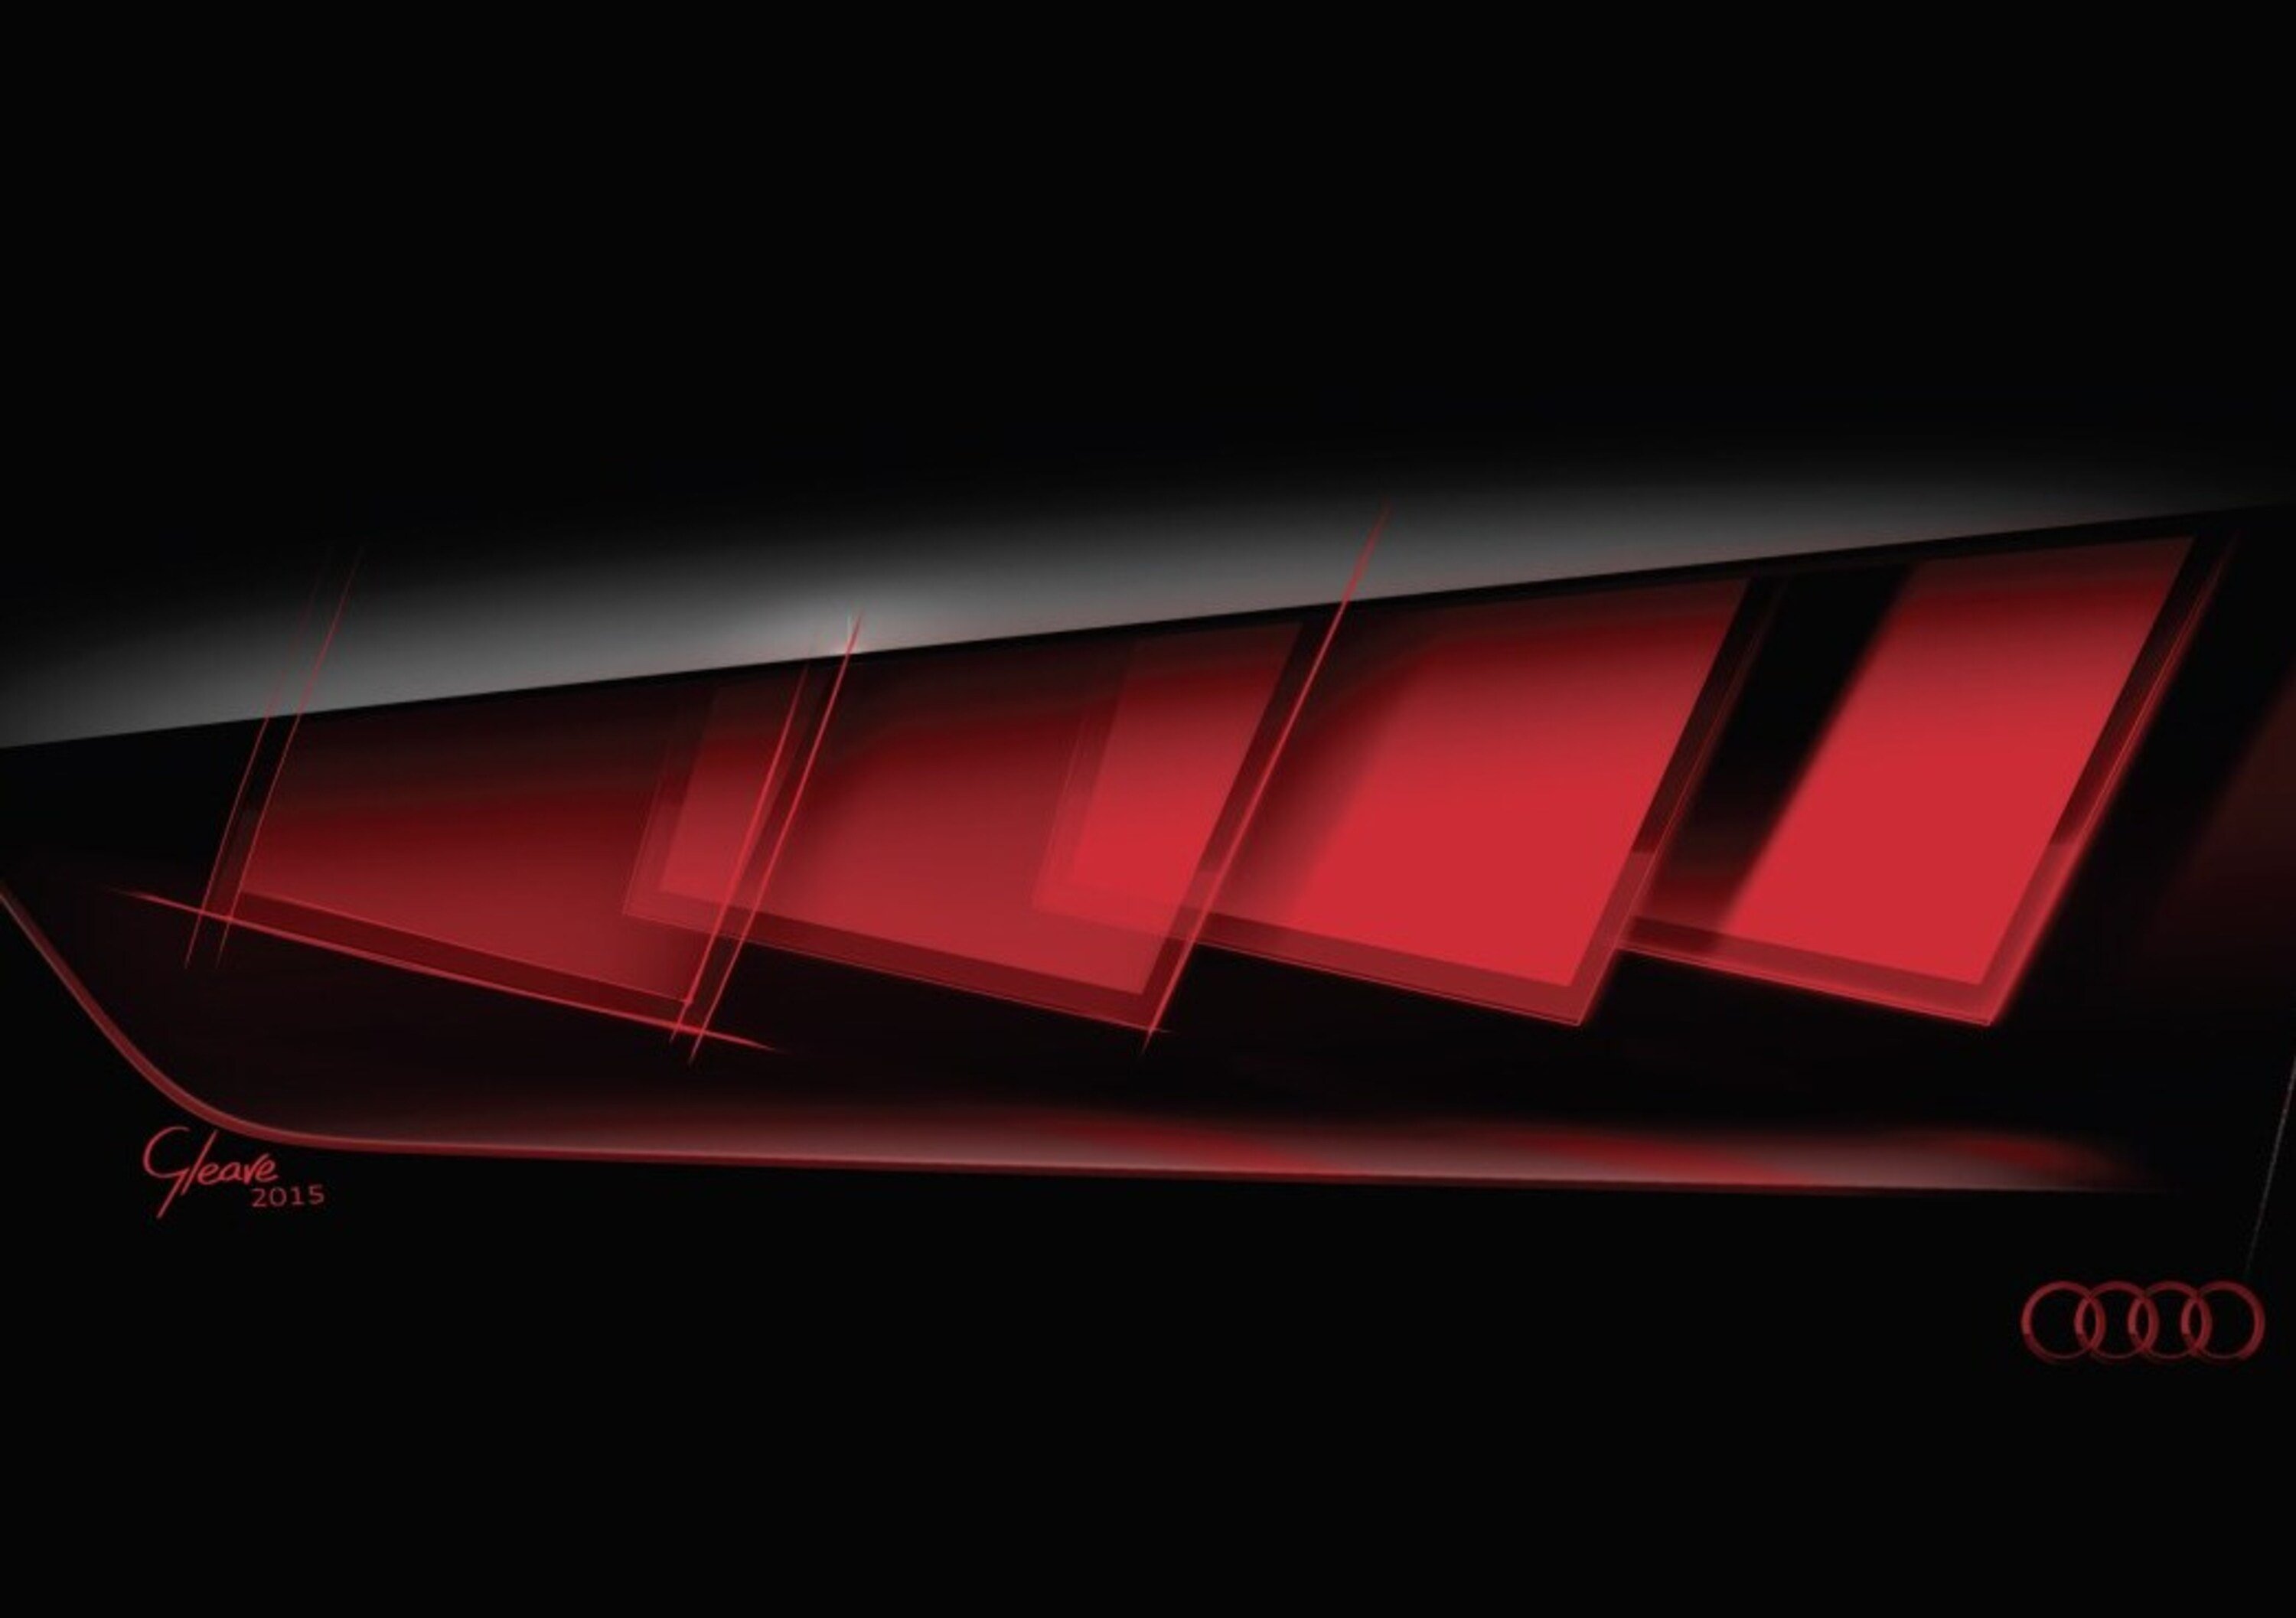 Audi: come vedere meglio con la tecnologia OLED